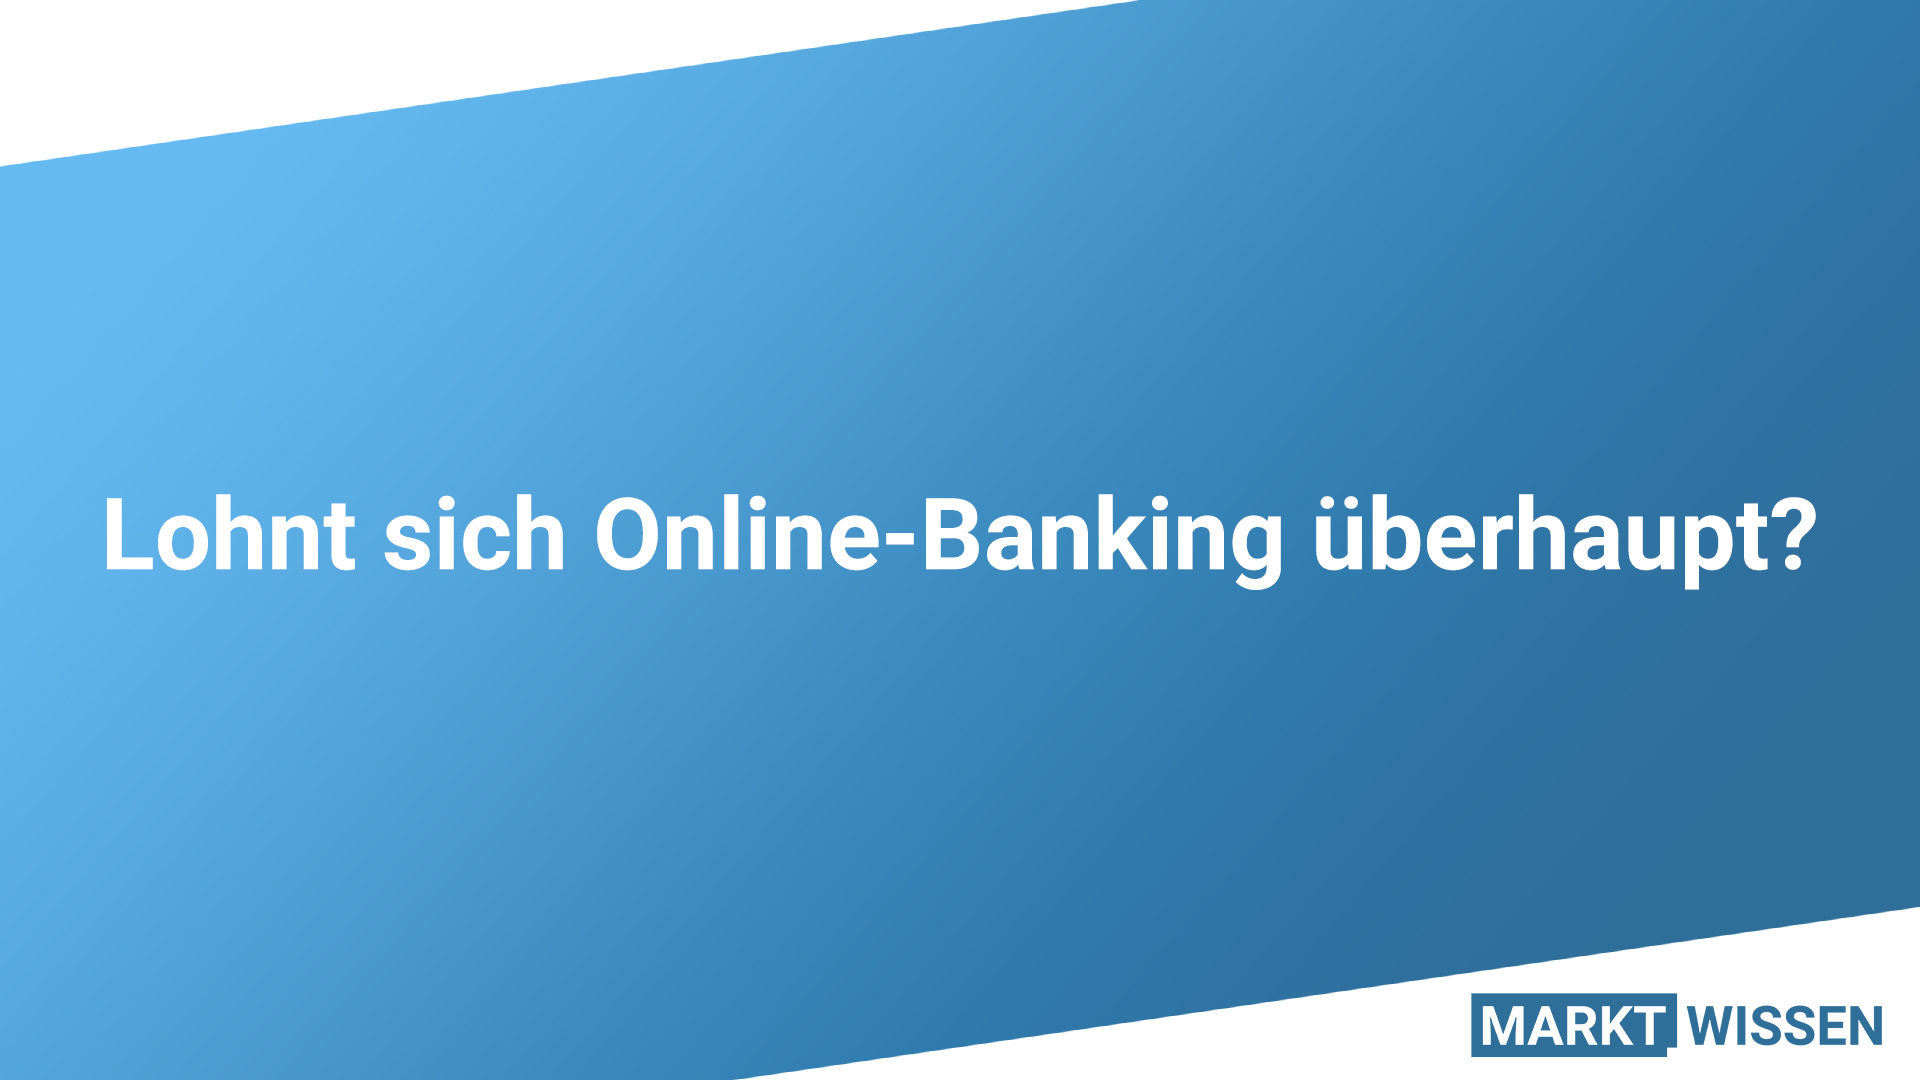 Lohnt sich Online-Banking?